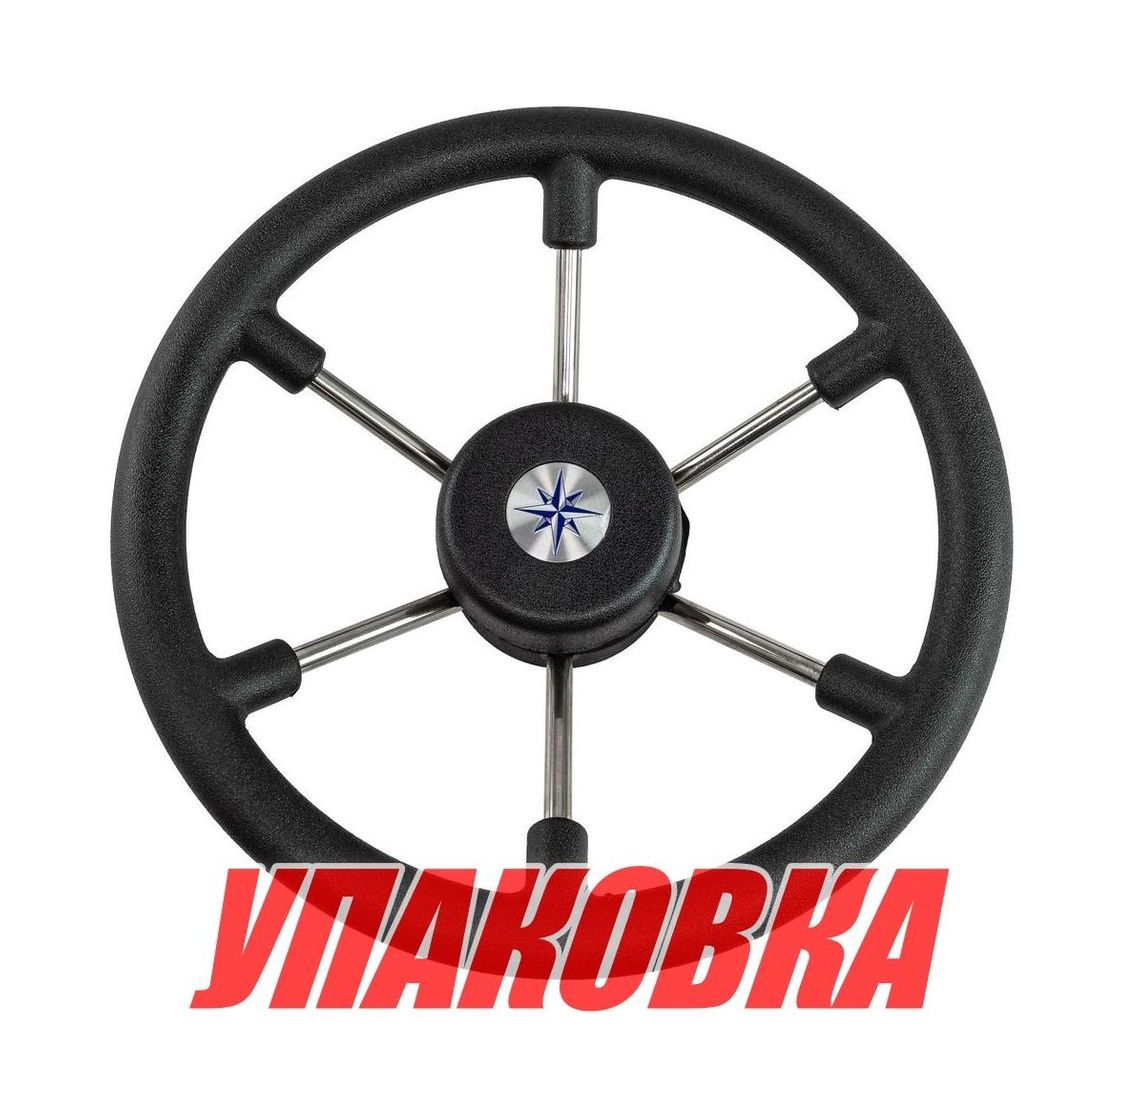 Рулевое колесо LEADER TANEGUM черный обод серебряные спицы д. 330 мм (упаковка из 6 шт.) Volanti Luisi VN7330-01_pkg_6